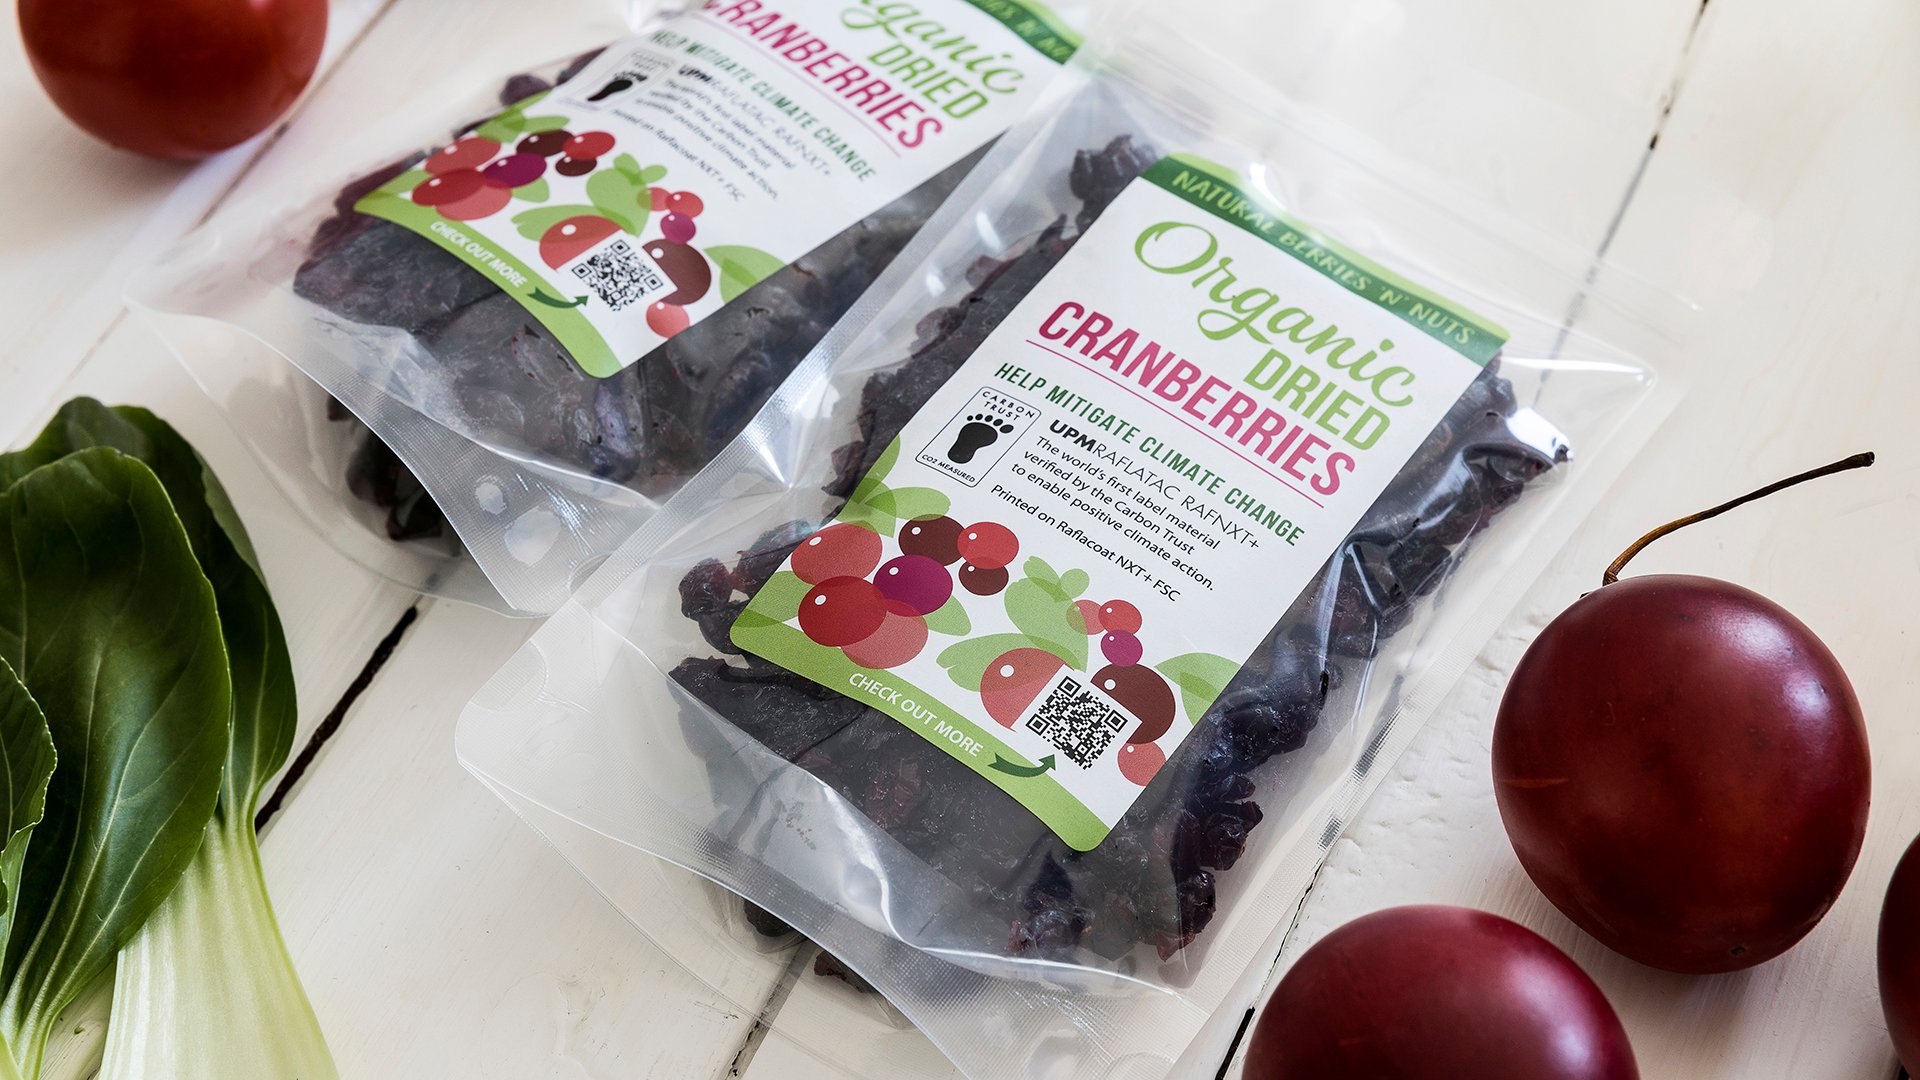 upm-raflatac-labeling-material-cranberries.jpg